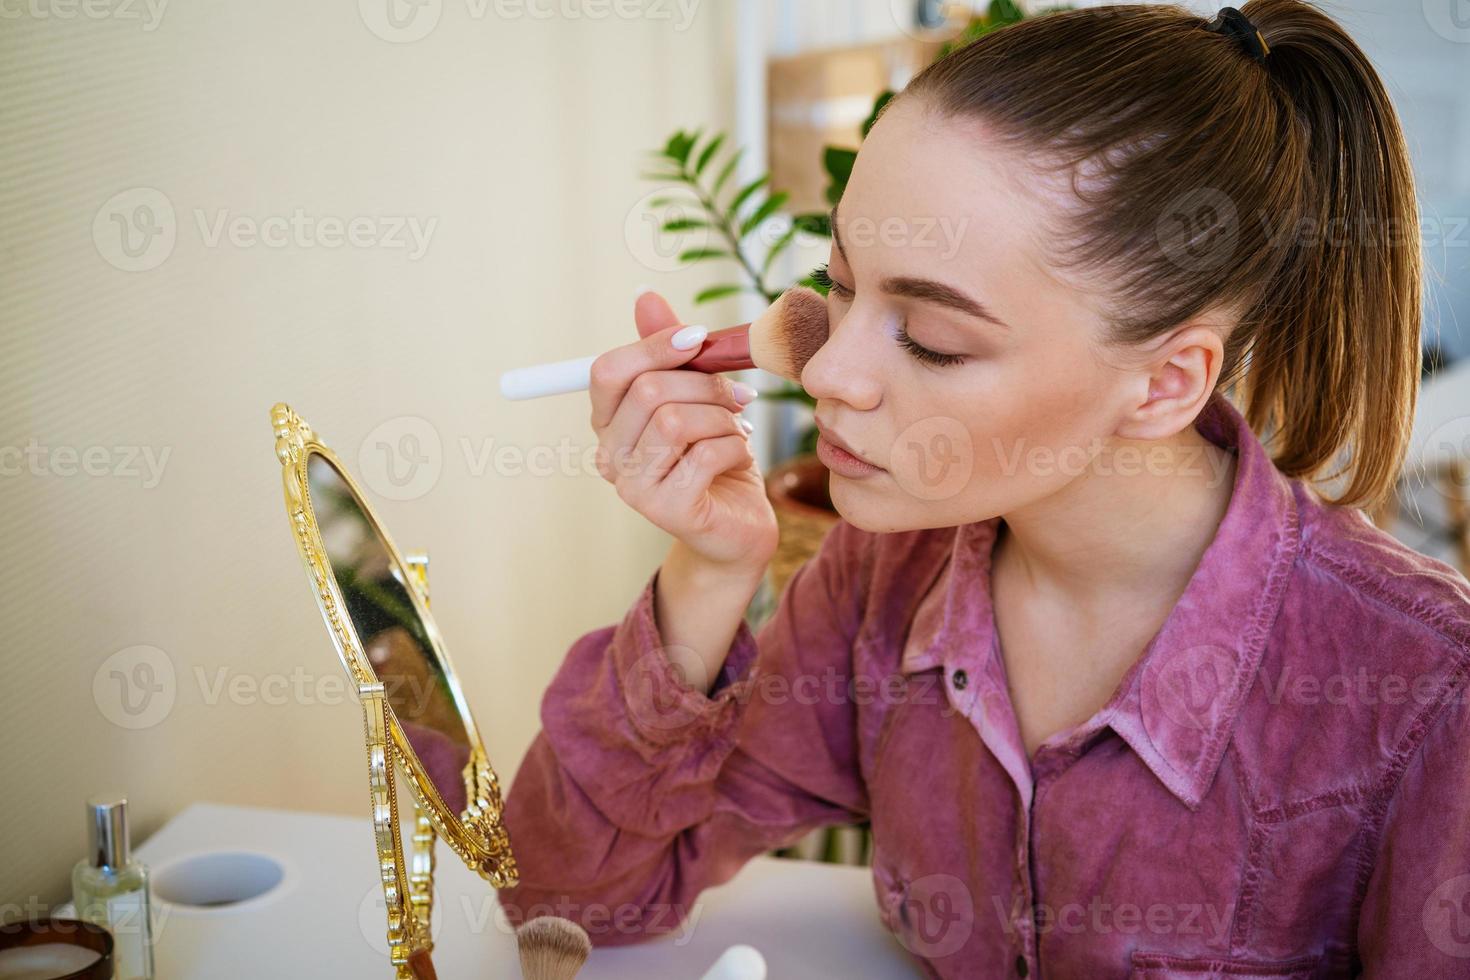 bella joven se ruboriza en la cara usando un cepillo de maquillaje mientras está sentada foto